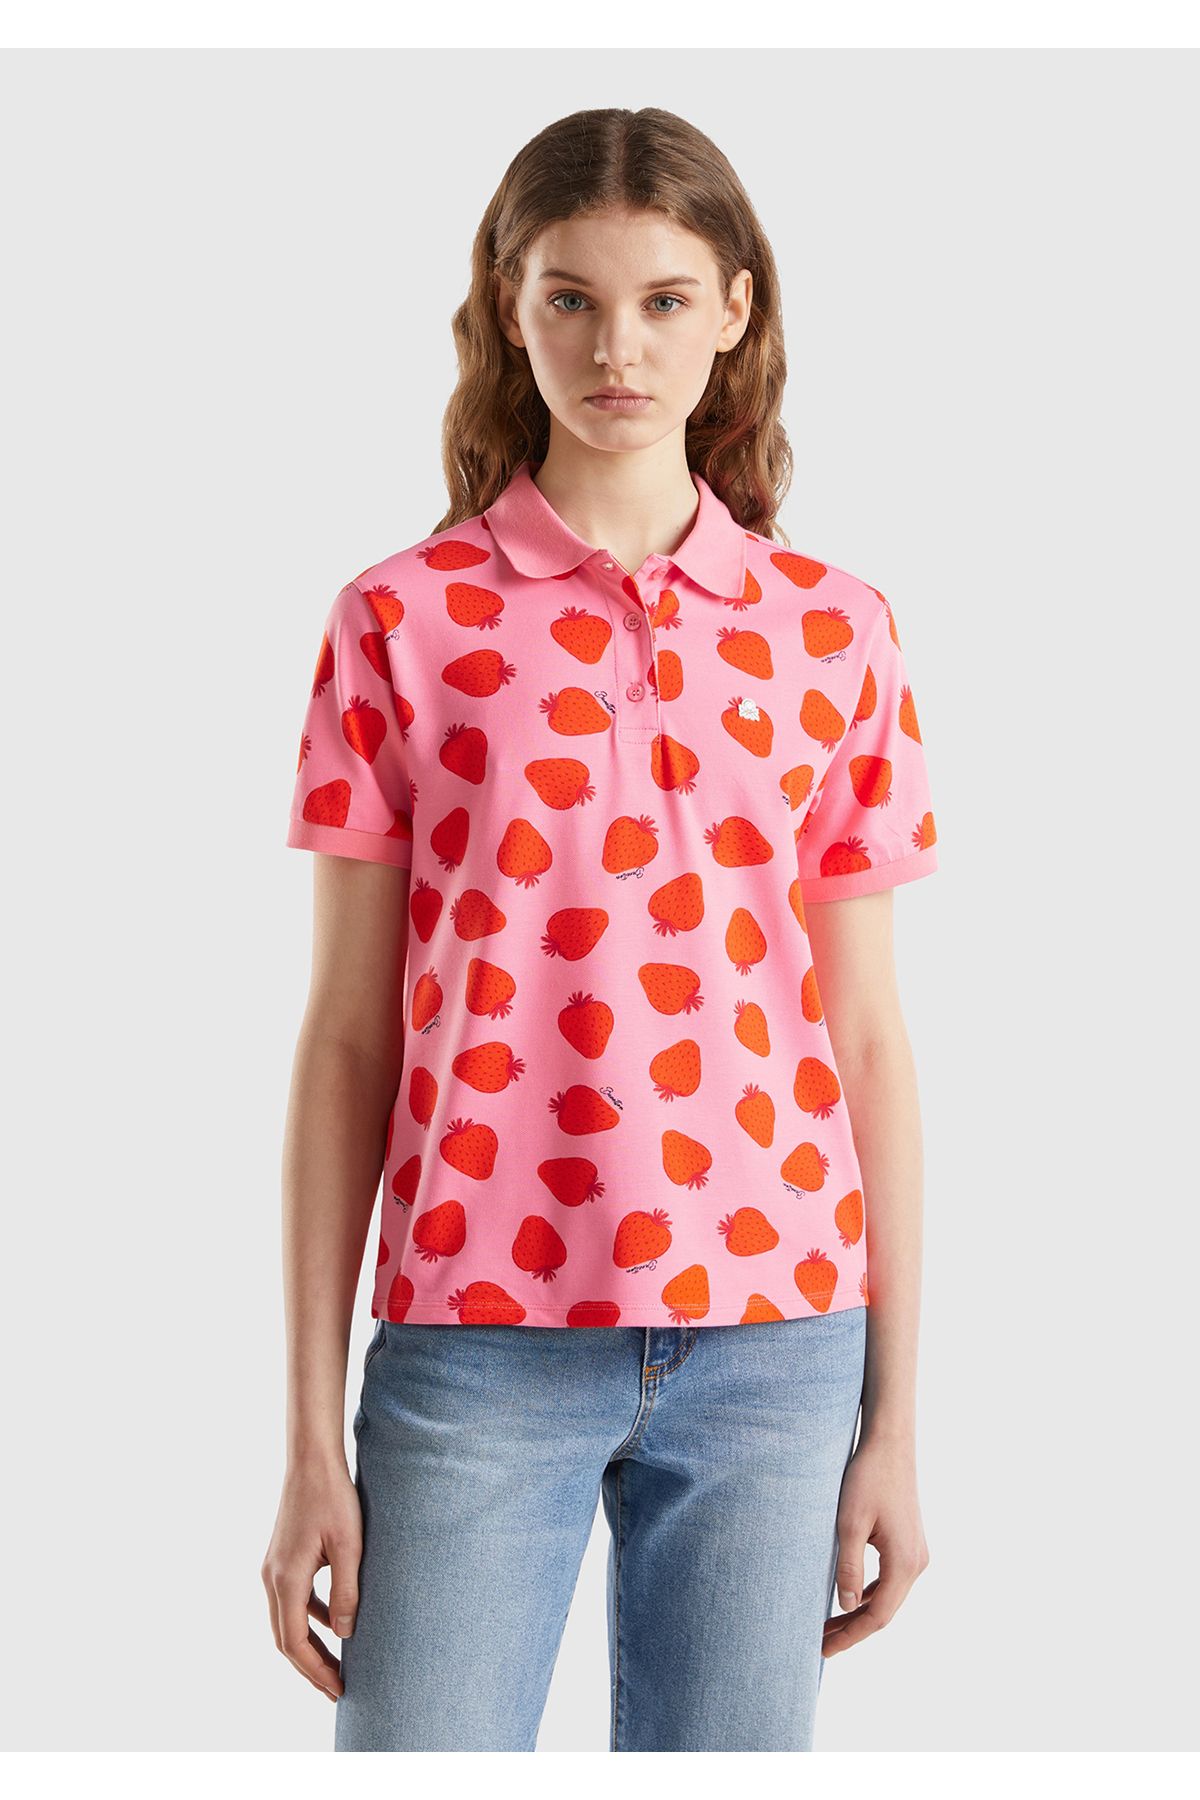 United Colors of Benetton Kadın Pembe-Kırmızı Streç Pamuklu Göğsü Logo İşlemeli Tamamı Desenli Polo T-Shirt